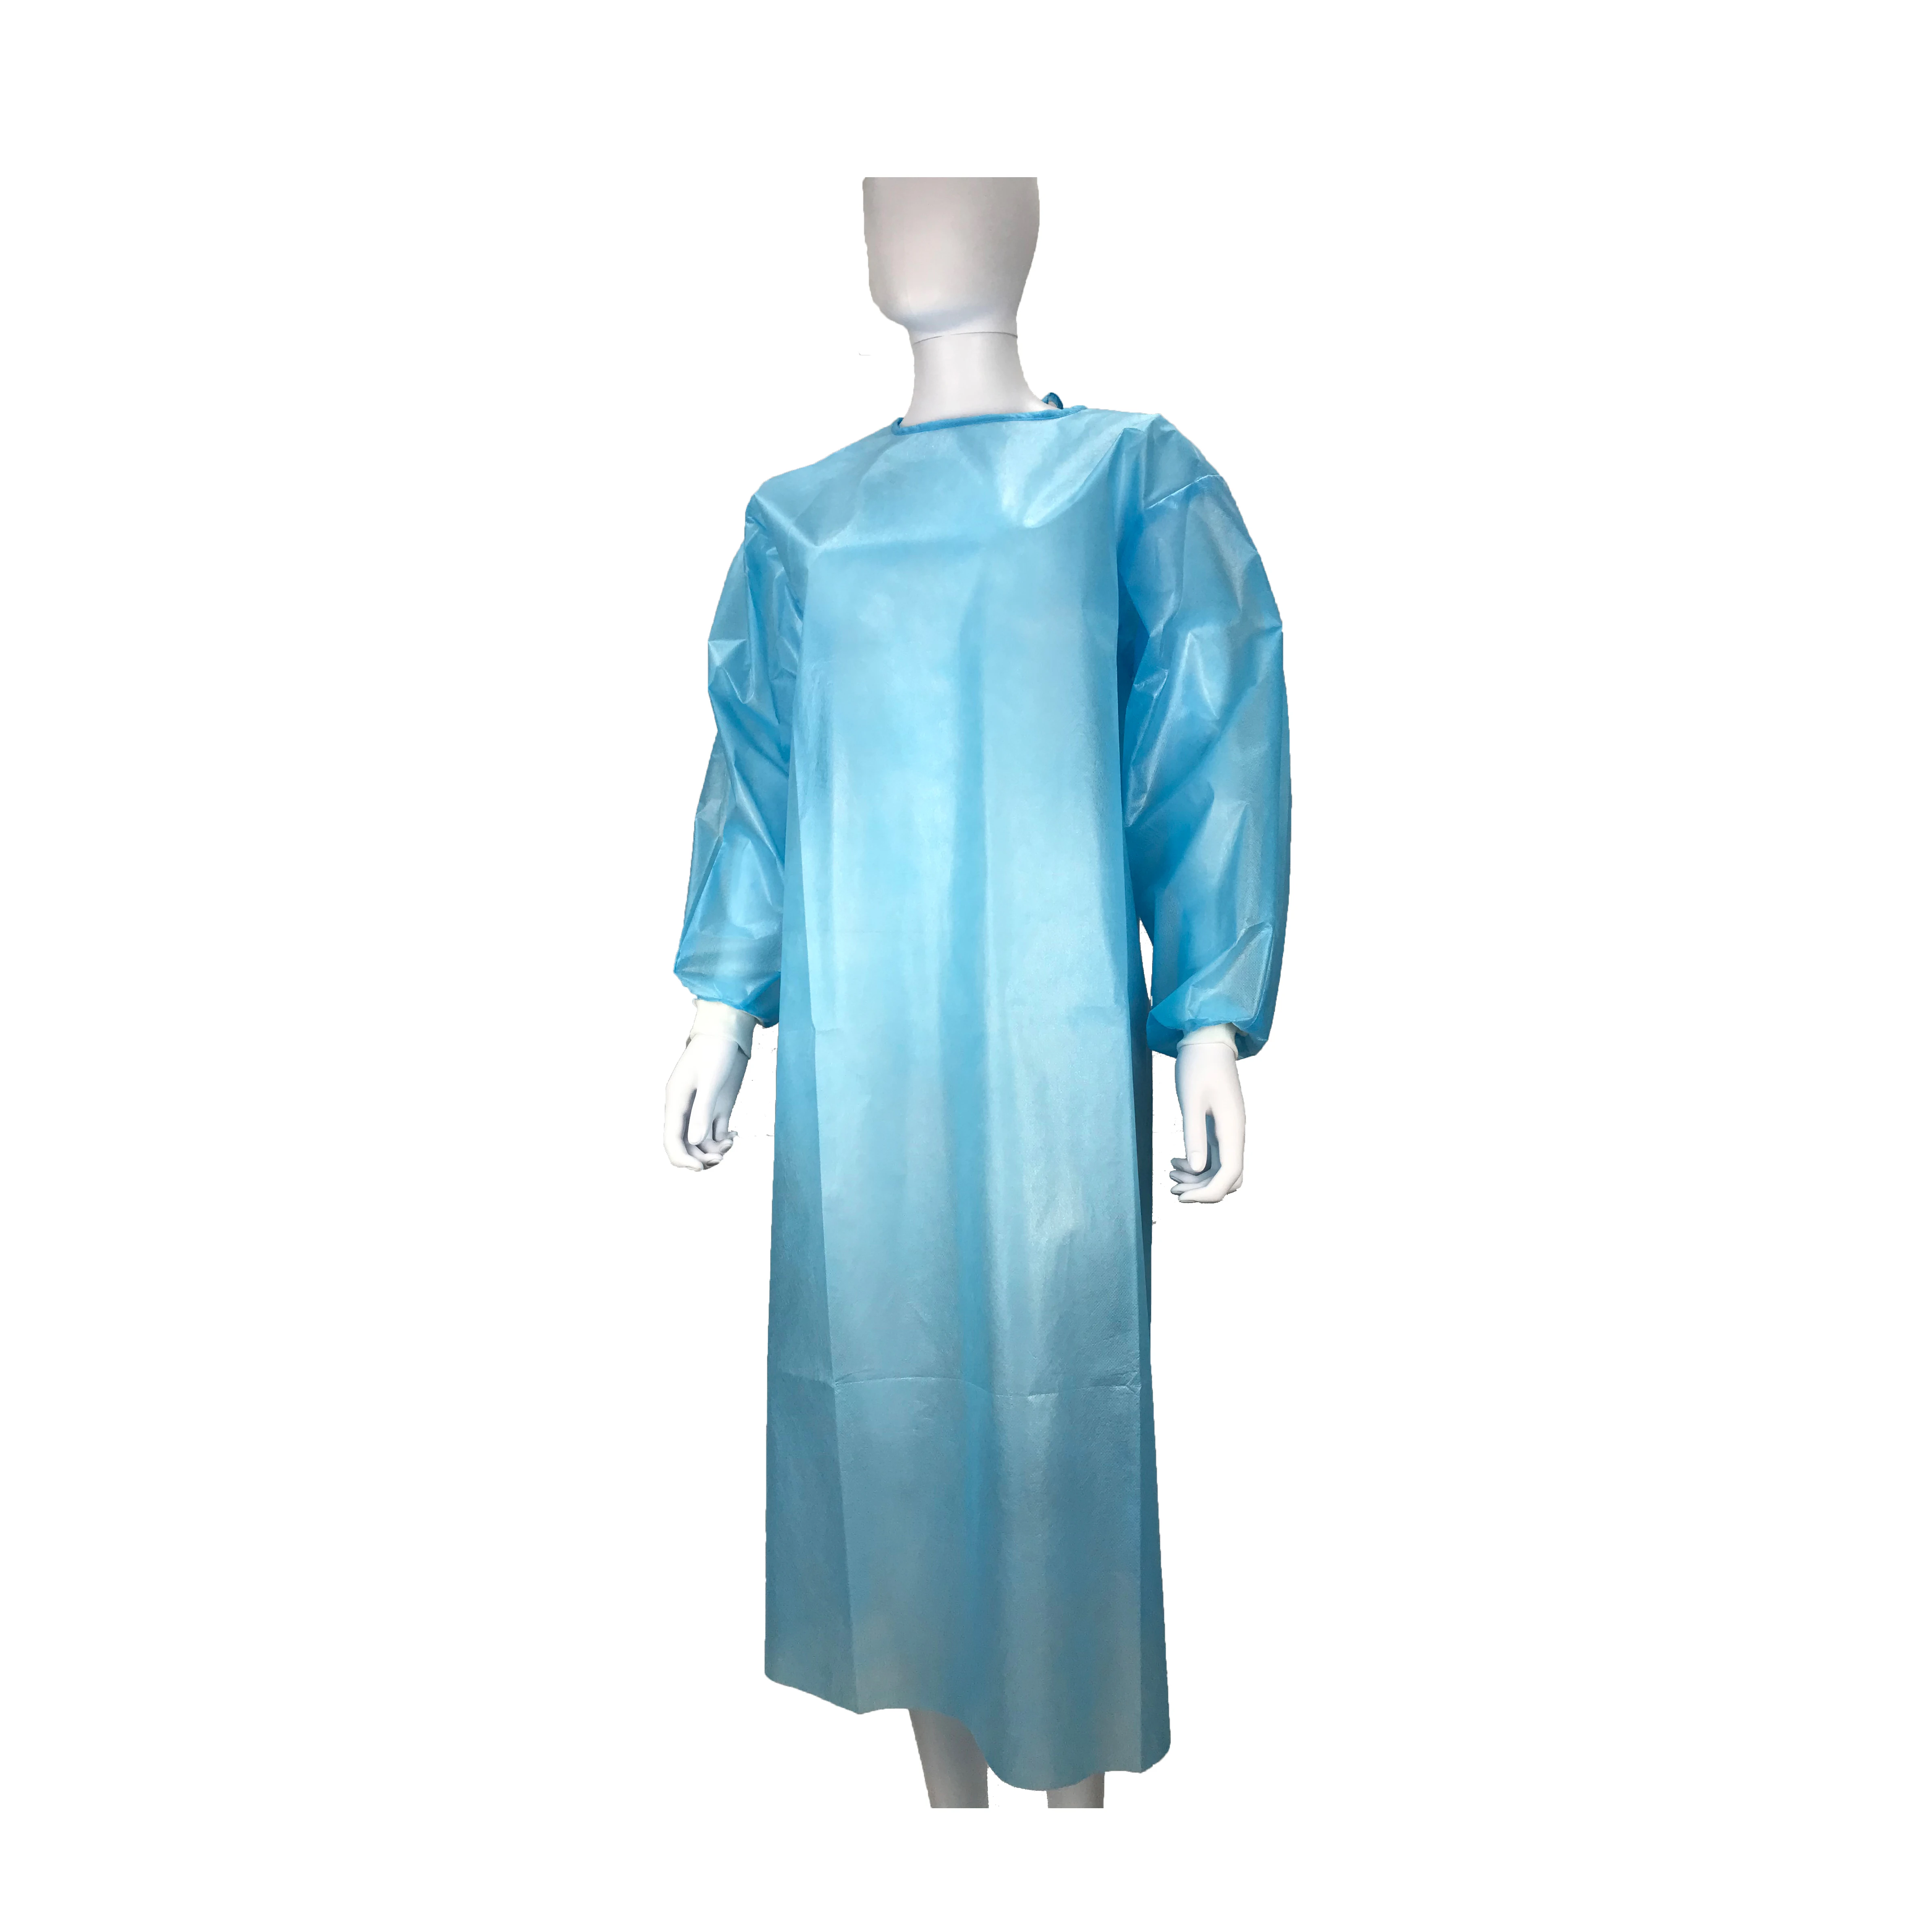 ΕΠΙΠΕΔΟ AAMI 1 ppe ρόμπα απομόνωσης ρόμπες απομόνωσης μιας χρήσης αδιάβροχο επίπεδο 1 φόρεμα απομόνωσης λευκή μανσέτα